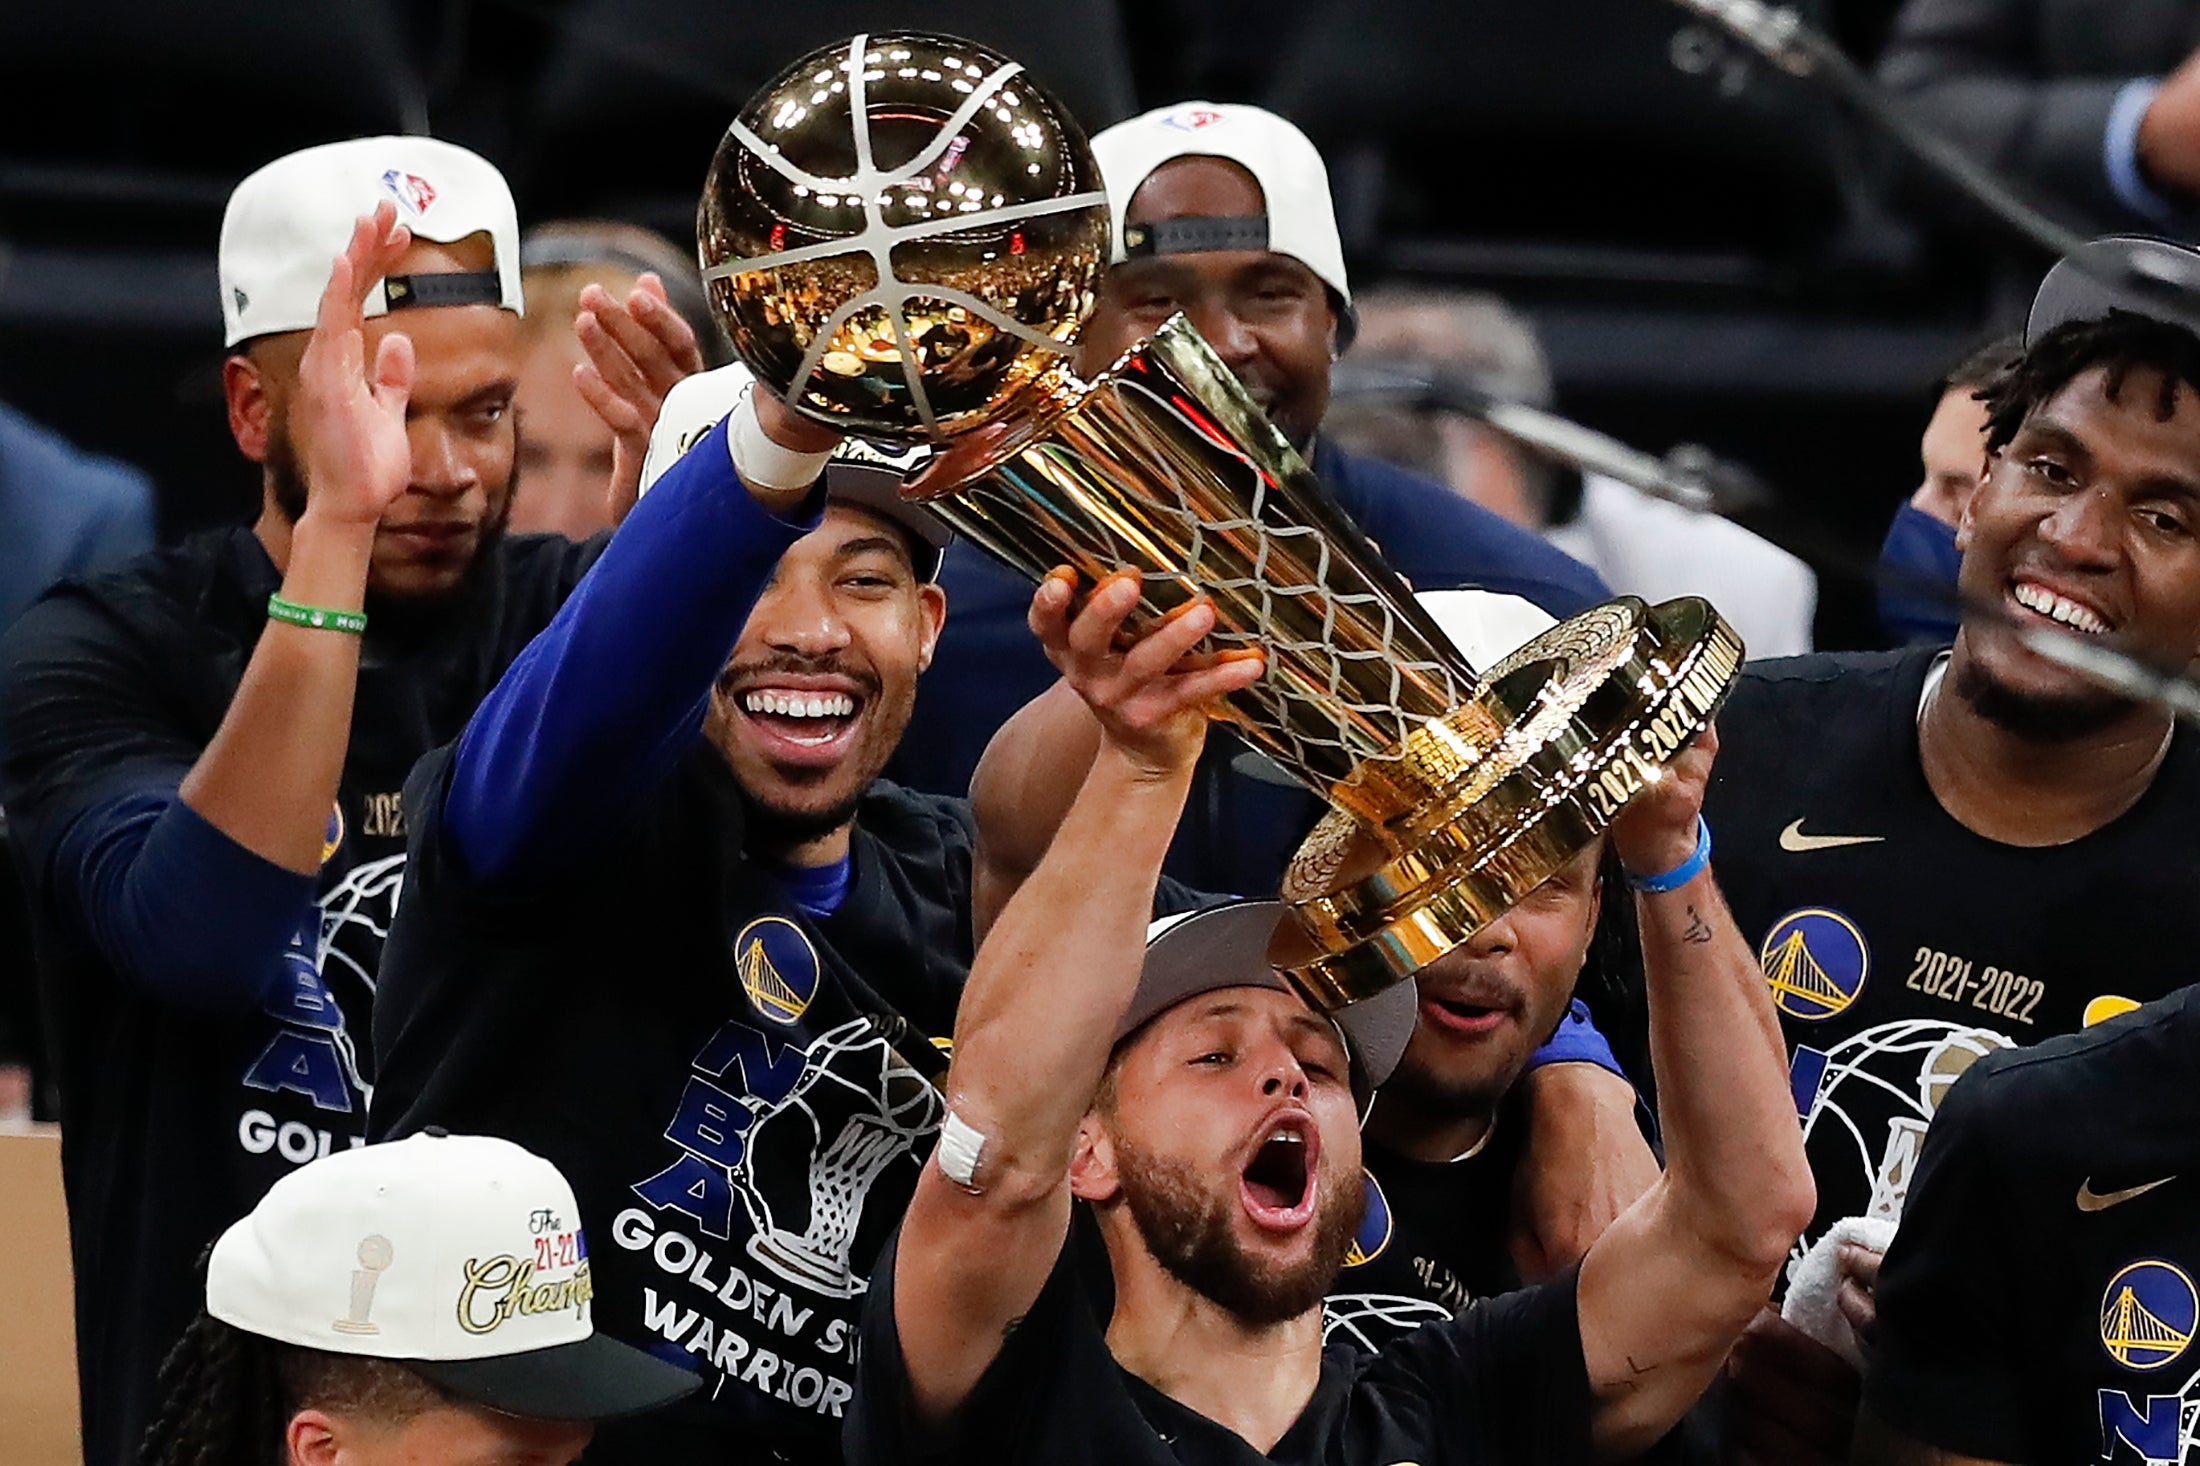 Steph Curry hoists the NBA trophy aloft